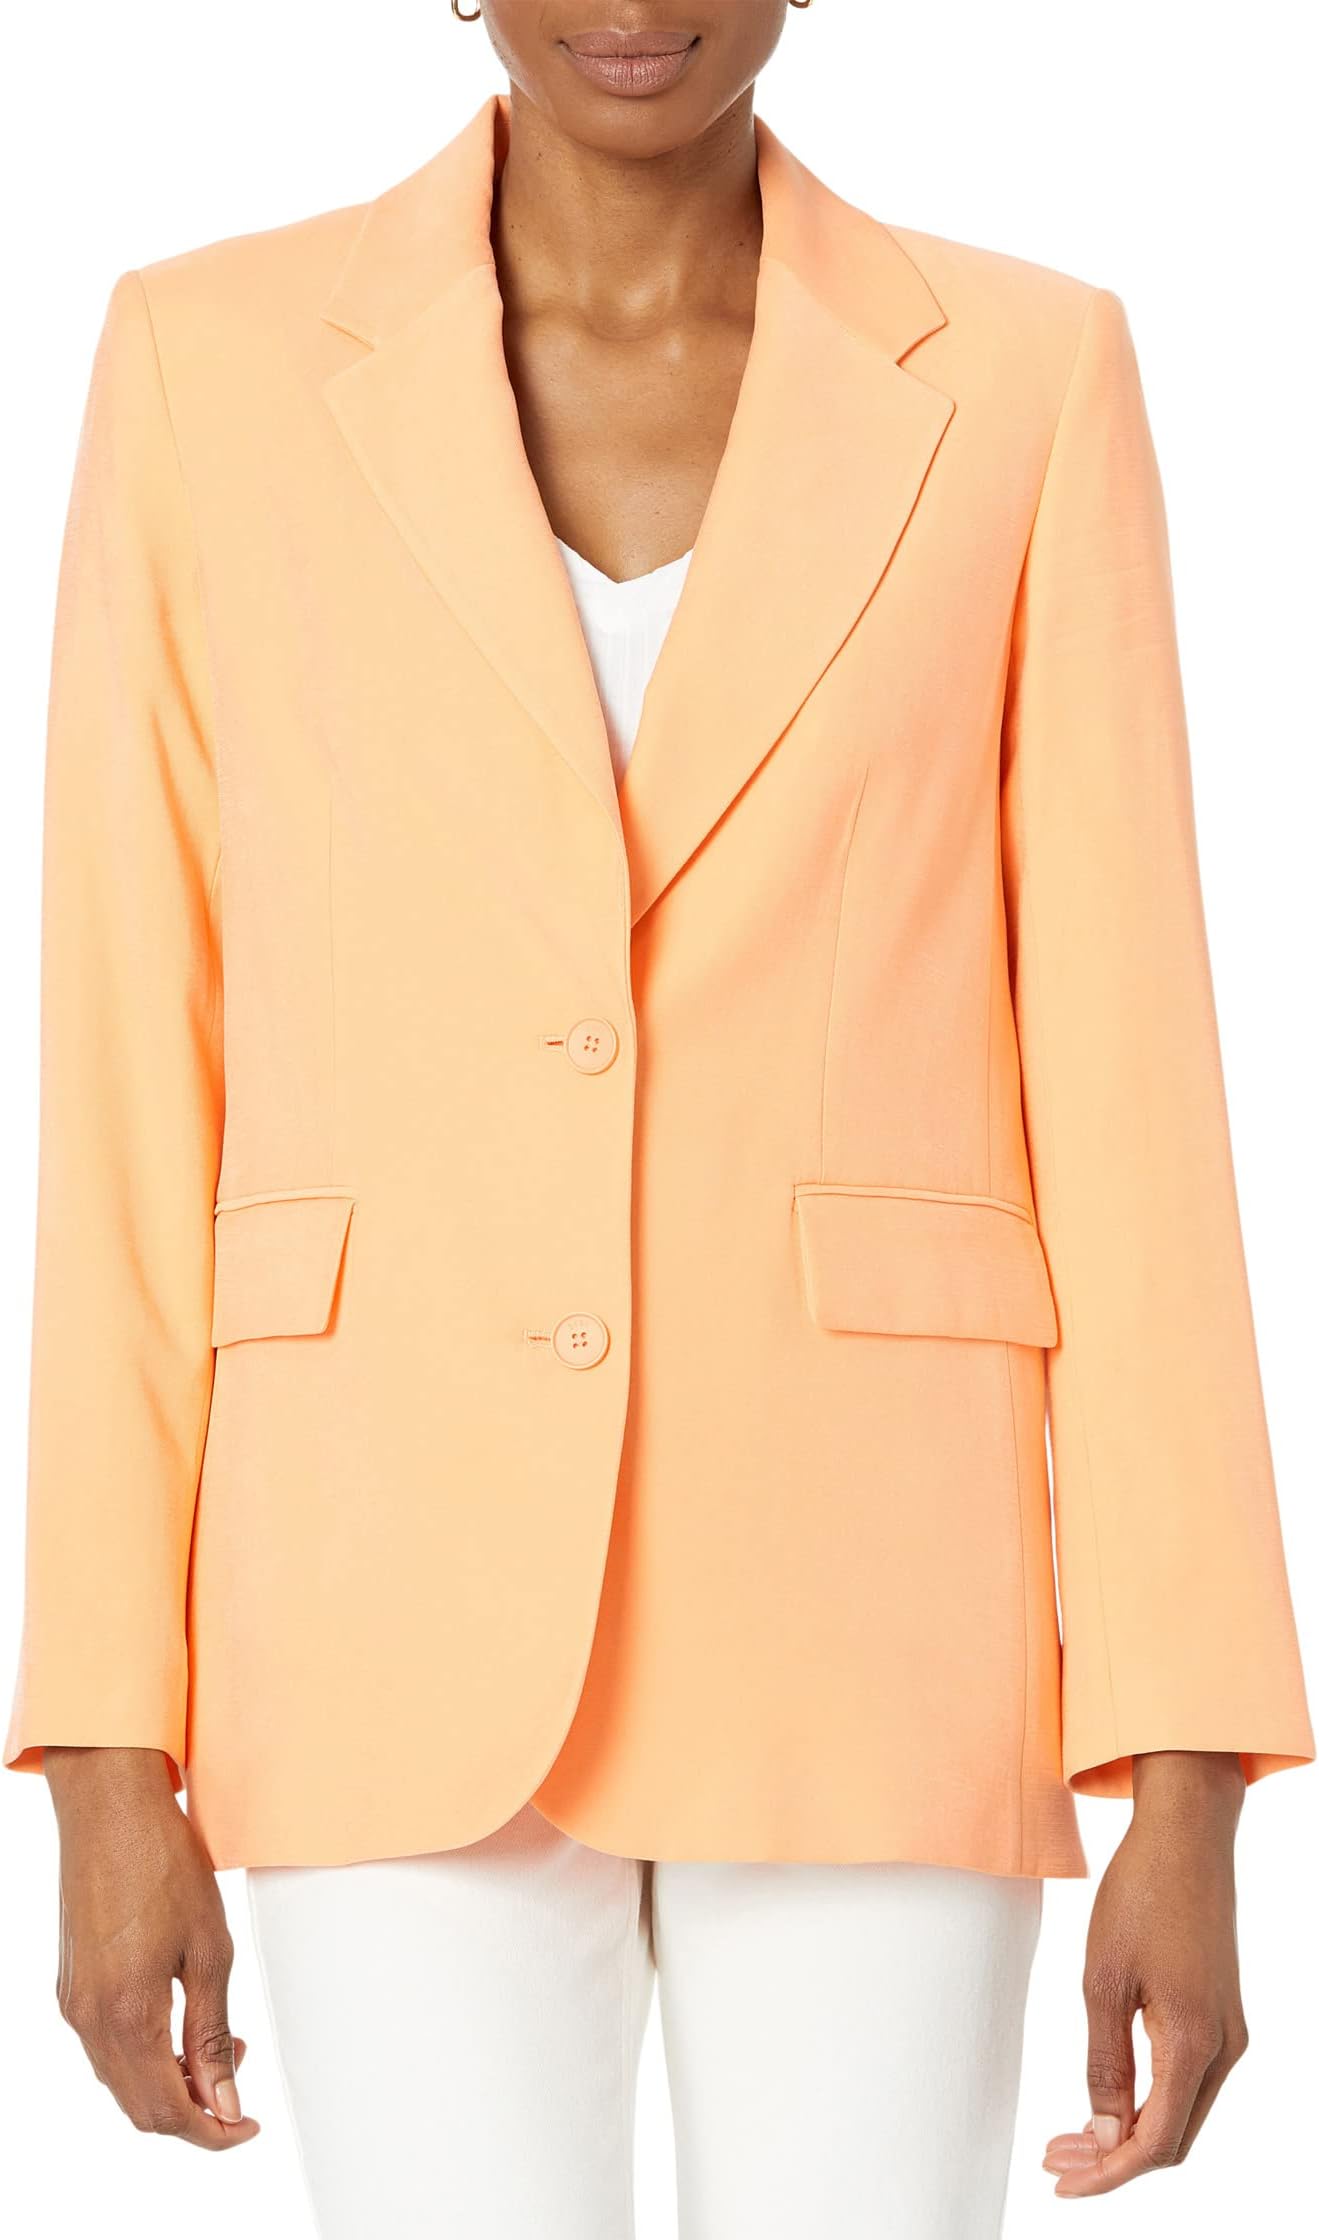 Пиджак на одной пуговице из матового твила DKNY, цвет Canteloupe однотонный пиджак на одной пуговице dkny цвет light fatique